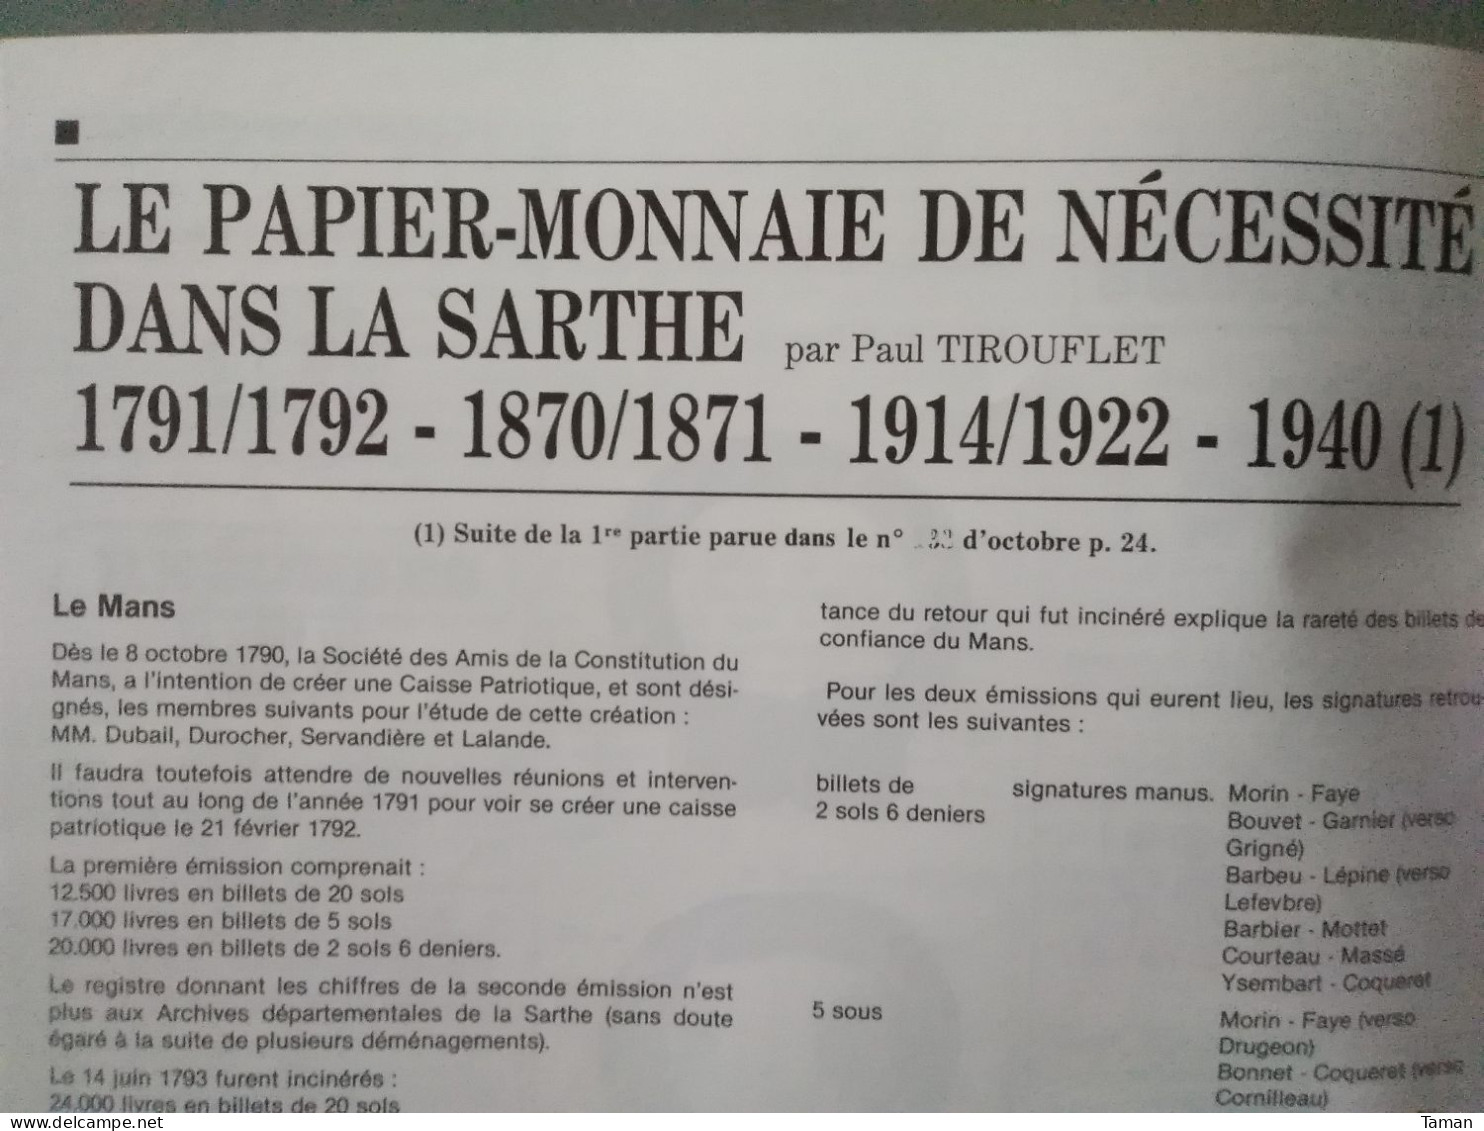 Numismatique & change - Napoléonides Etrurie - Bysance - Royales - Belgique - Nécessité Sarthe